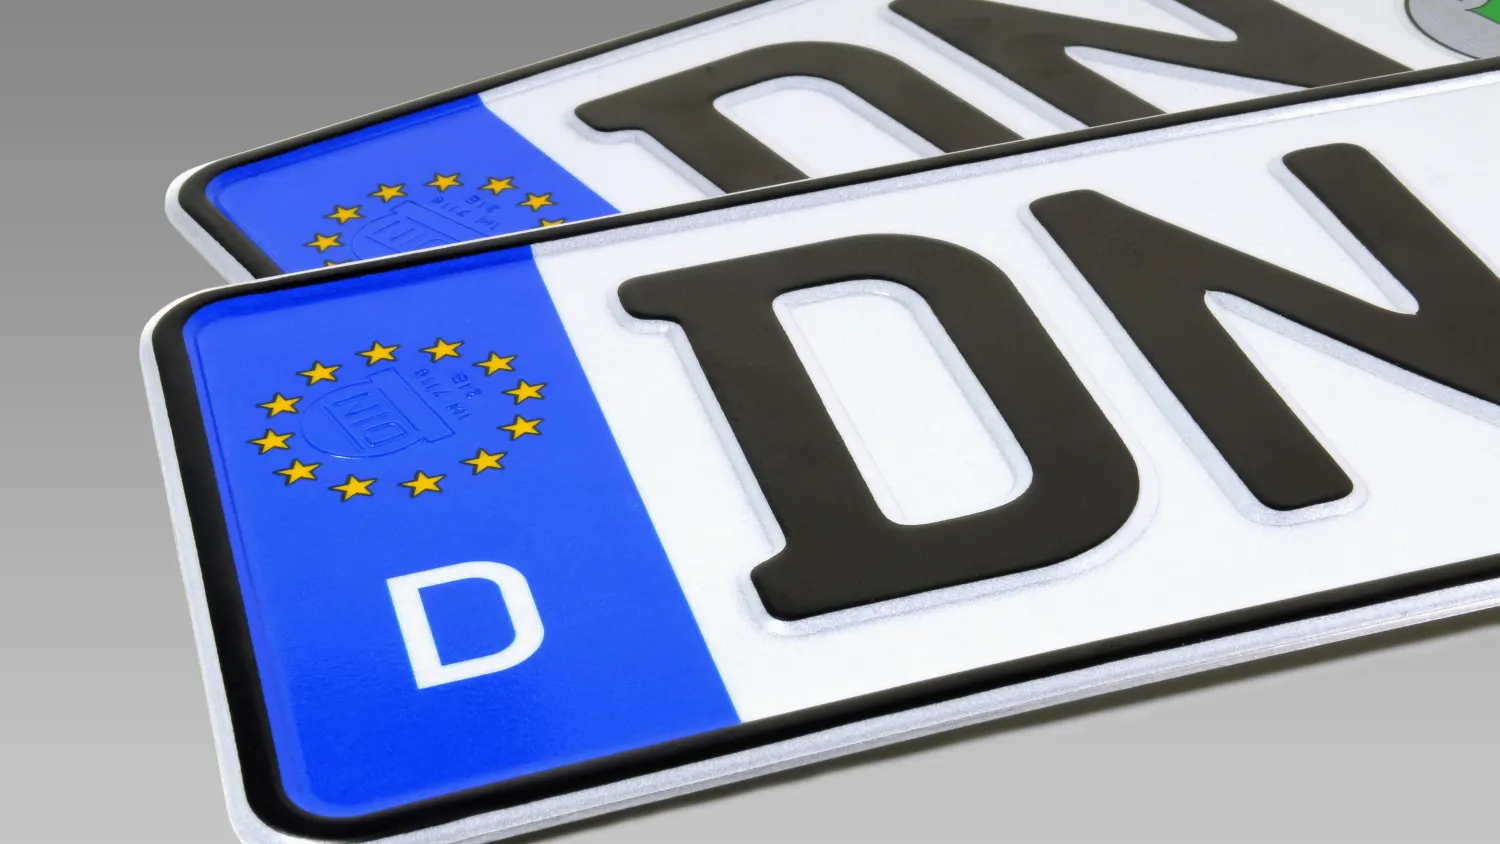 Motorrad Kennzeichen EURO kürzester Standard zweizeilig